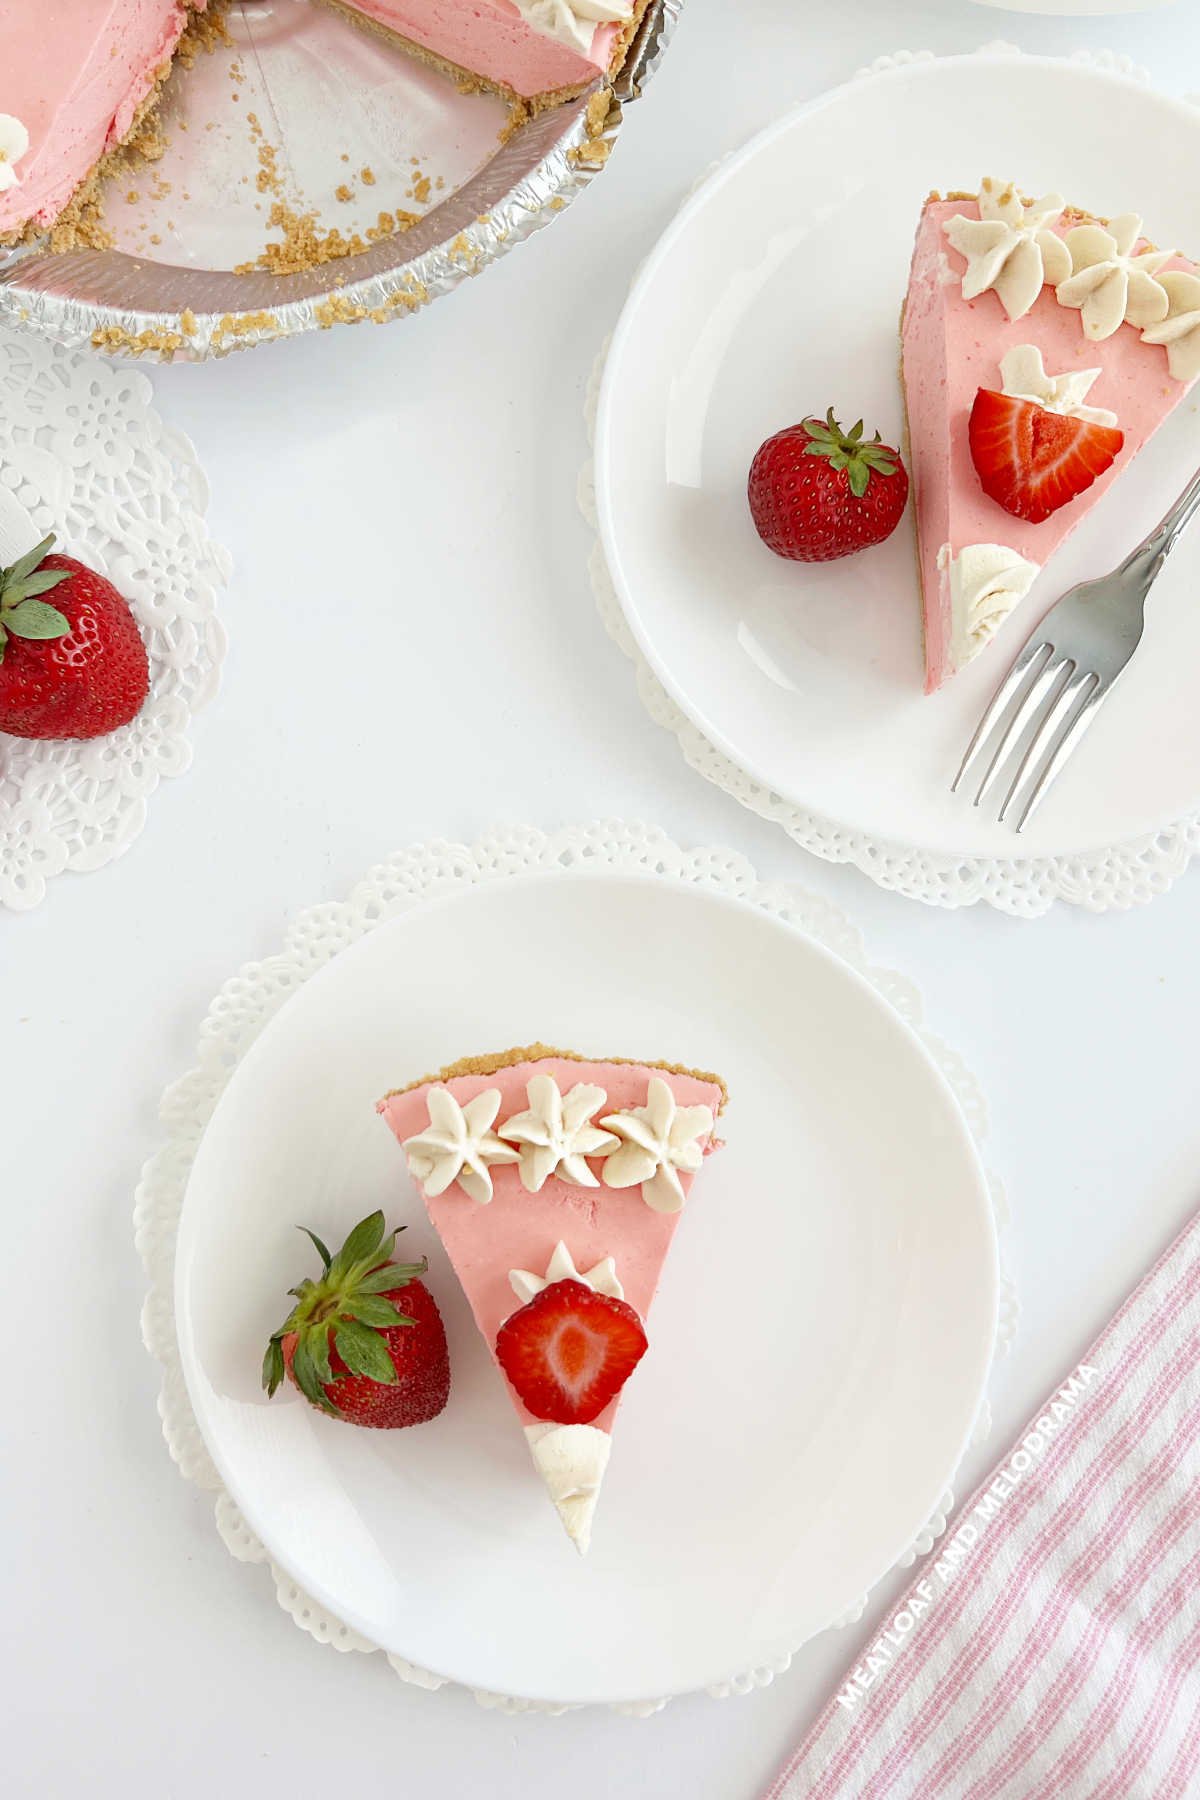 φέτες ζελέ φράουλα δροσερό μαστίγιο πίτα με φράουλες στο τραπέζι